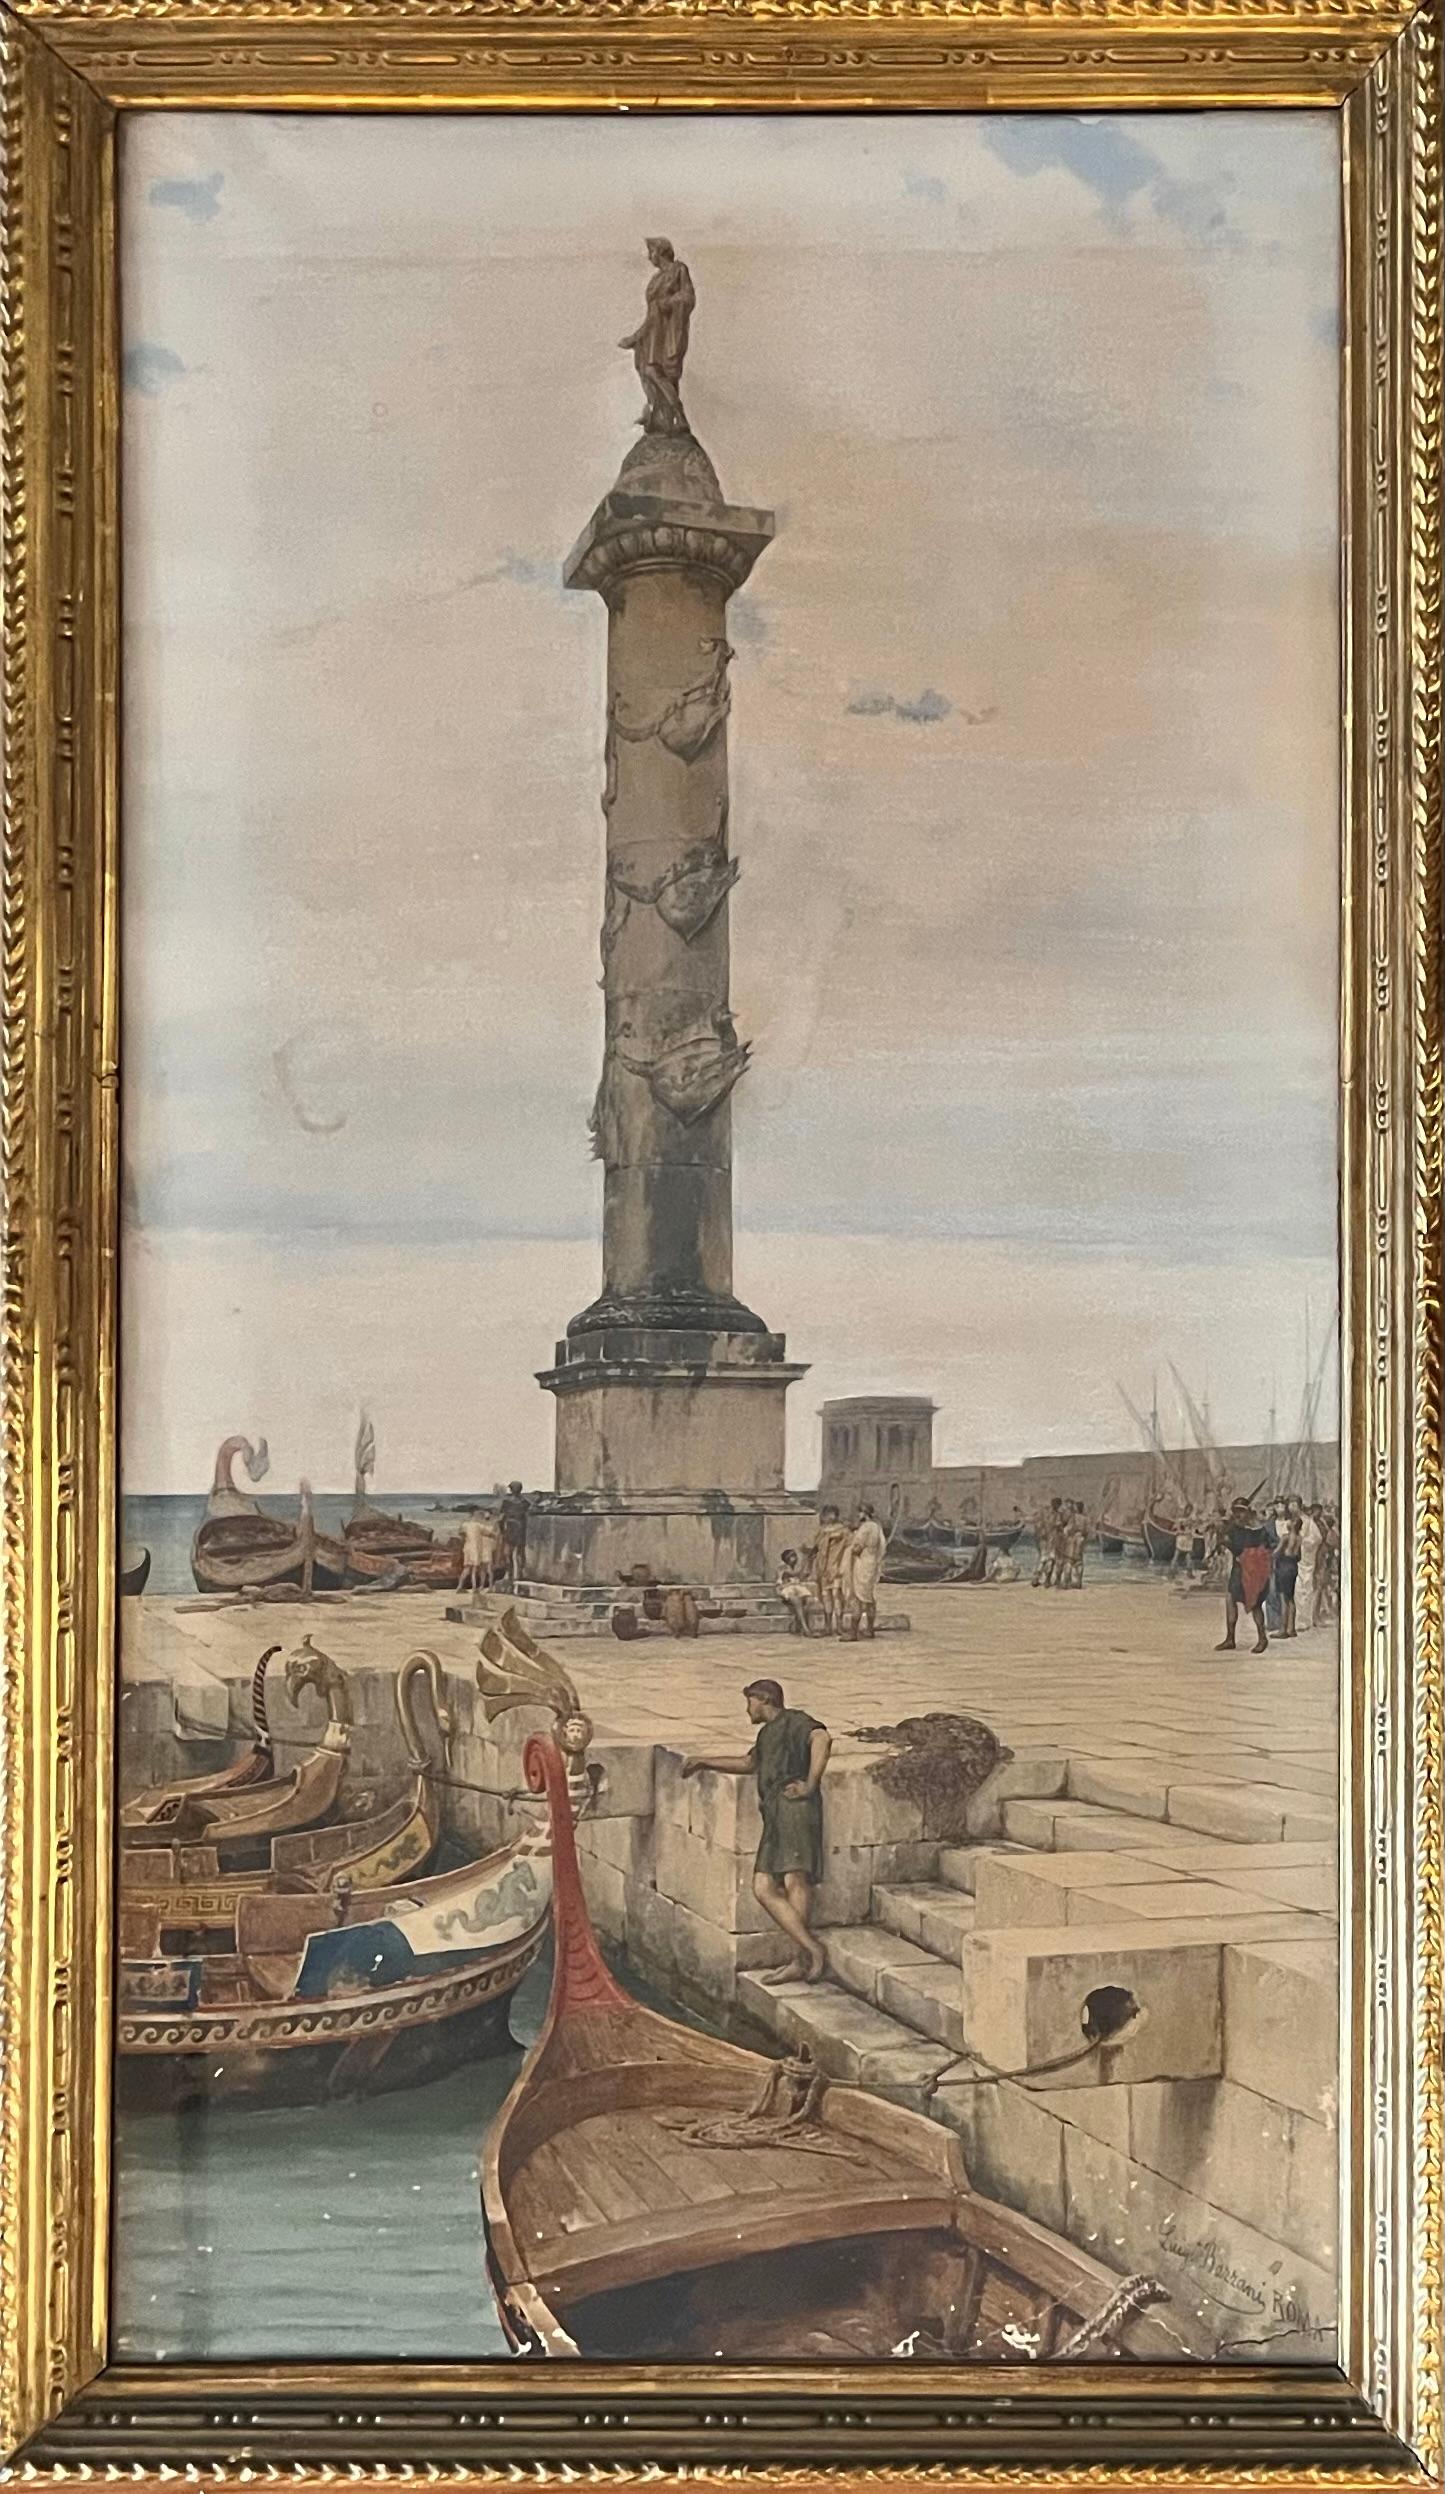 L'aquarelle délicate de Luigi Bazzani représentant le port animé de Portus, à Rome, décrit en détail les activités en cours. Le réalisme des détails architecturaux, de chaque marche et pierre à la colonne ornée, ainsi que l'ornementation délicate et